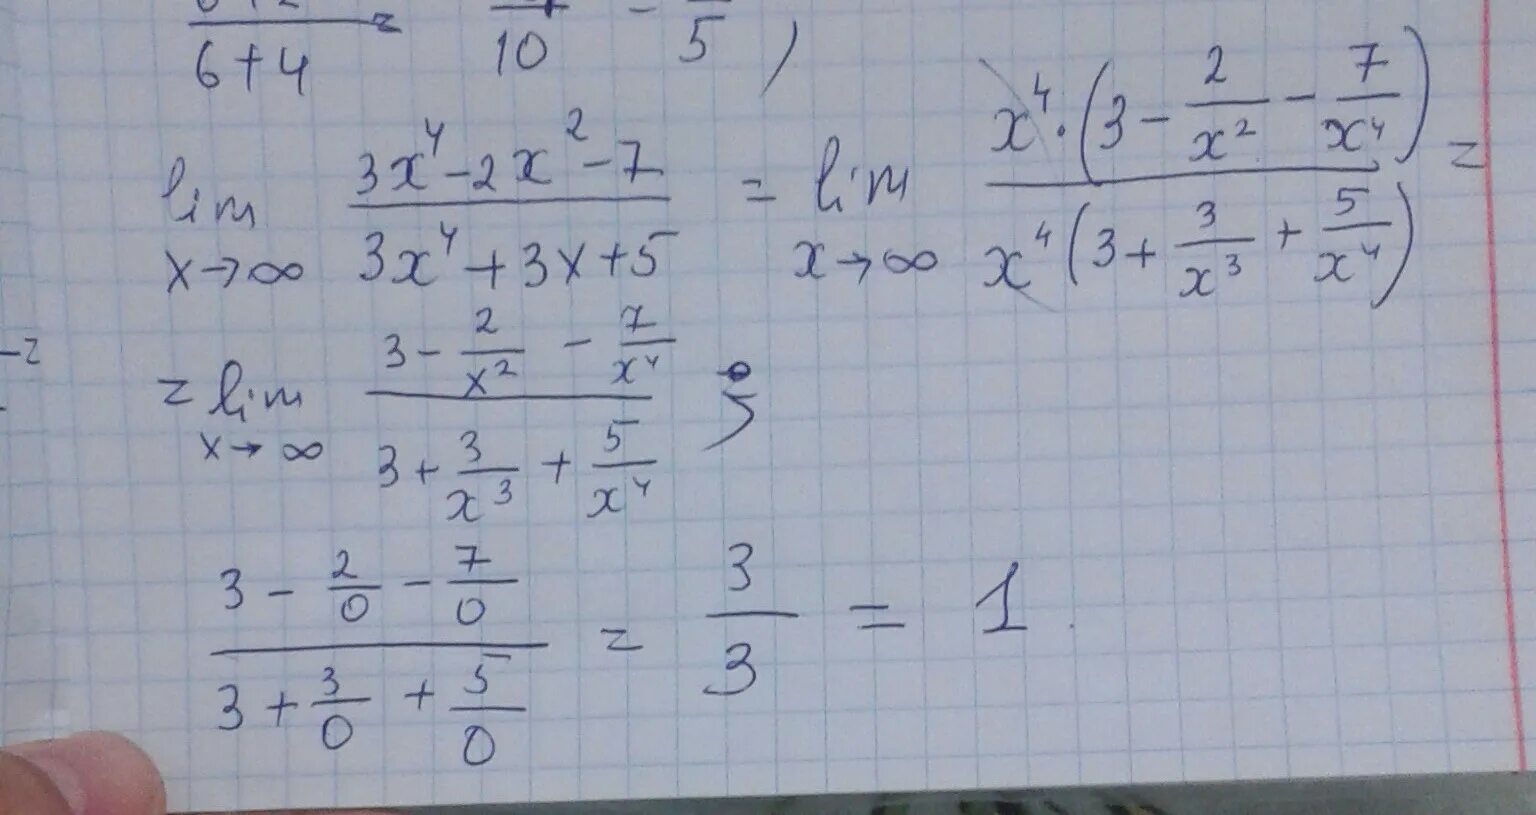 X2 21 10 x. Lim x стремится к бесконечности 2/x 2+3x. Lim x стремится к бесконечности x^2-4x+3/x+5. Lim x стремиться к бесконечности ( 2x/2x-3)^3x. Lim x стремится к бесконечности 3+x-5x4.